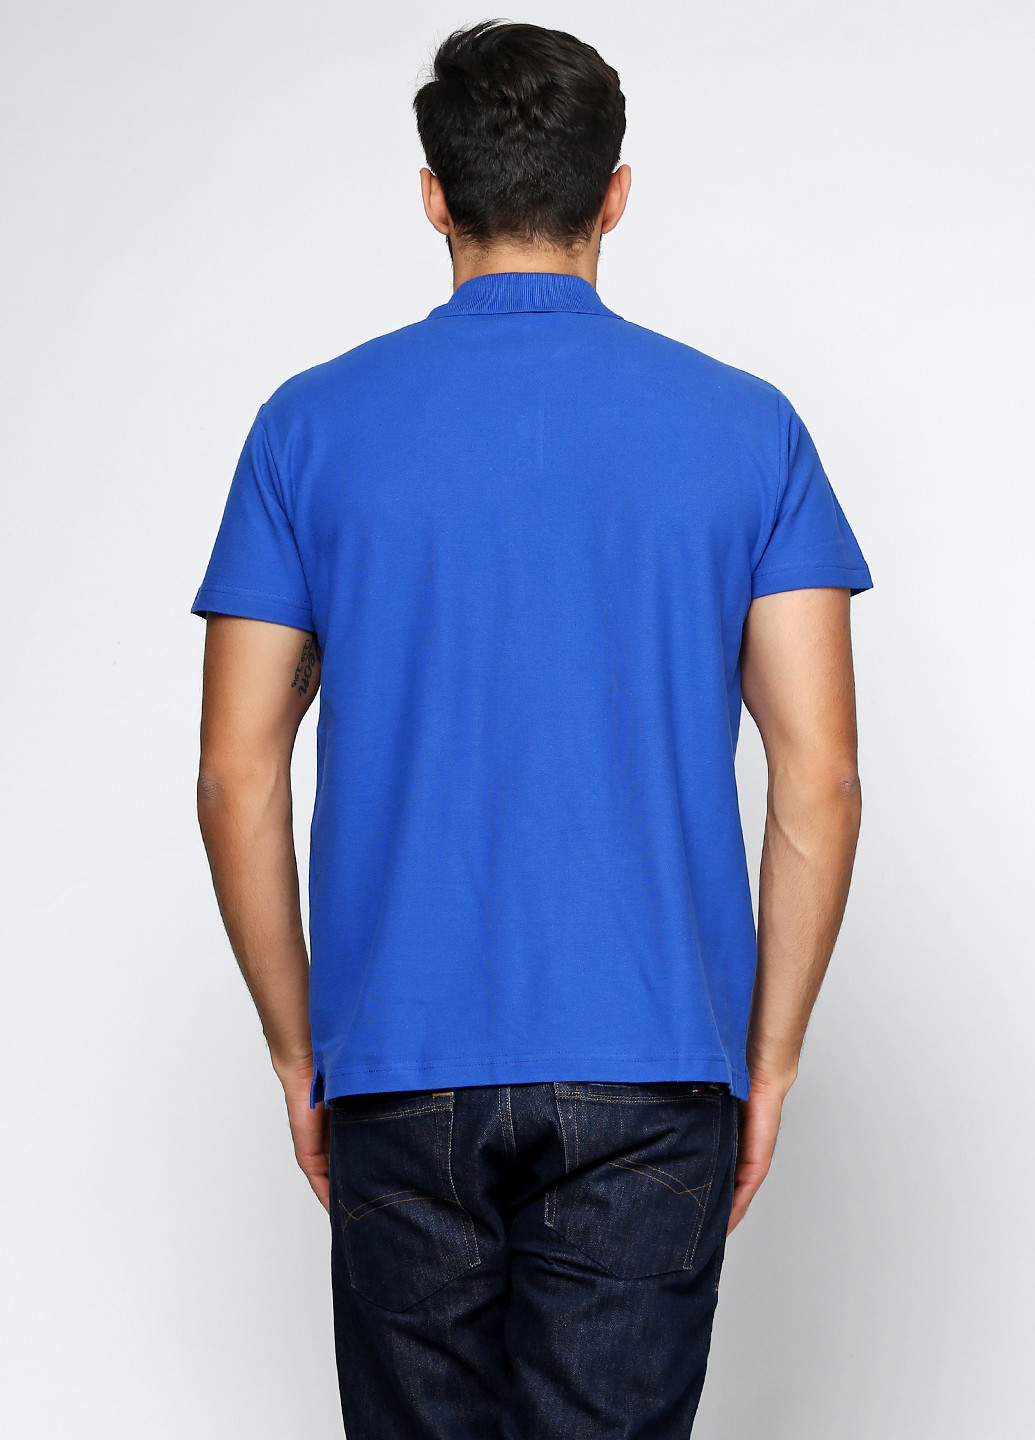 Синяя футболка-поло для мужчин Sol's однотонная